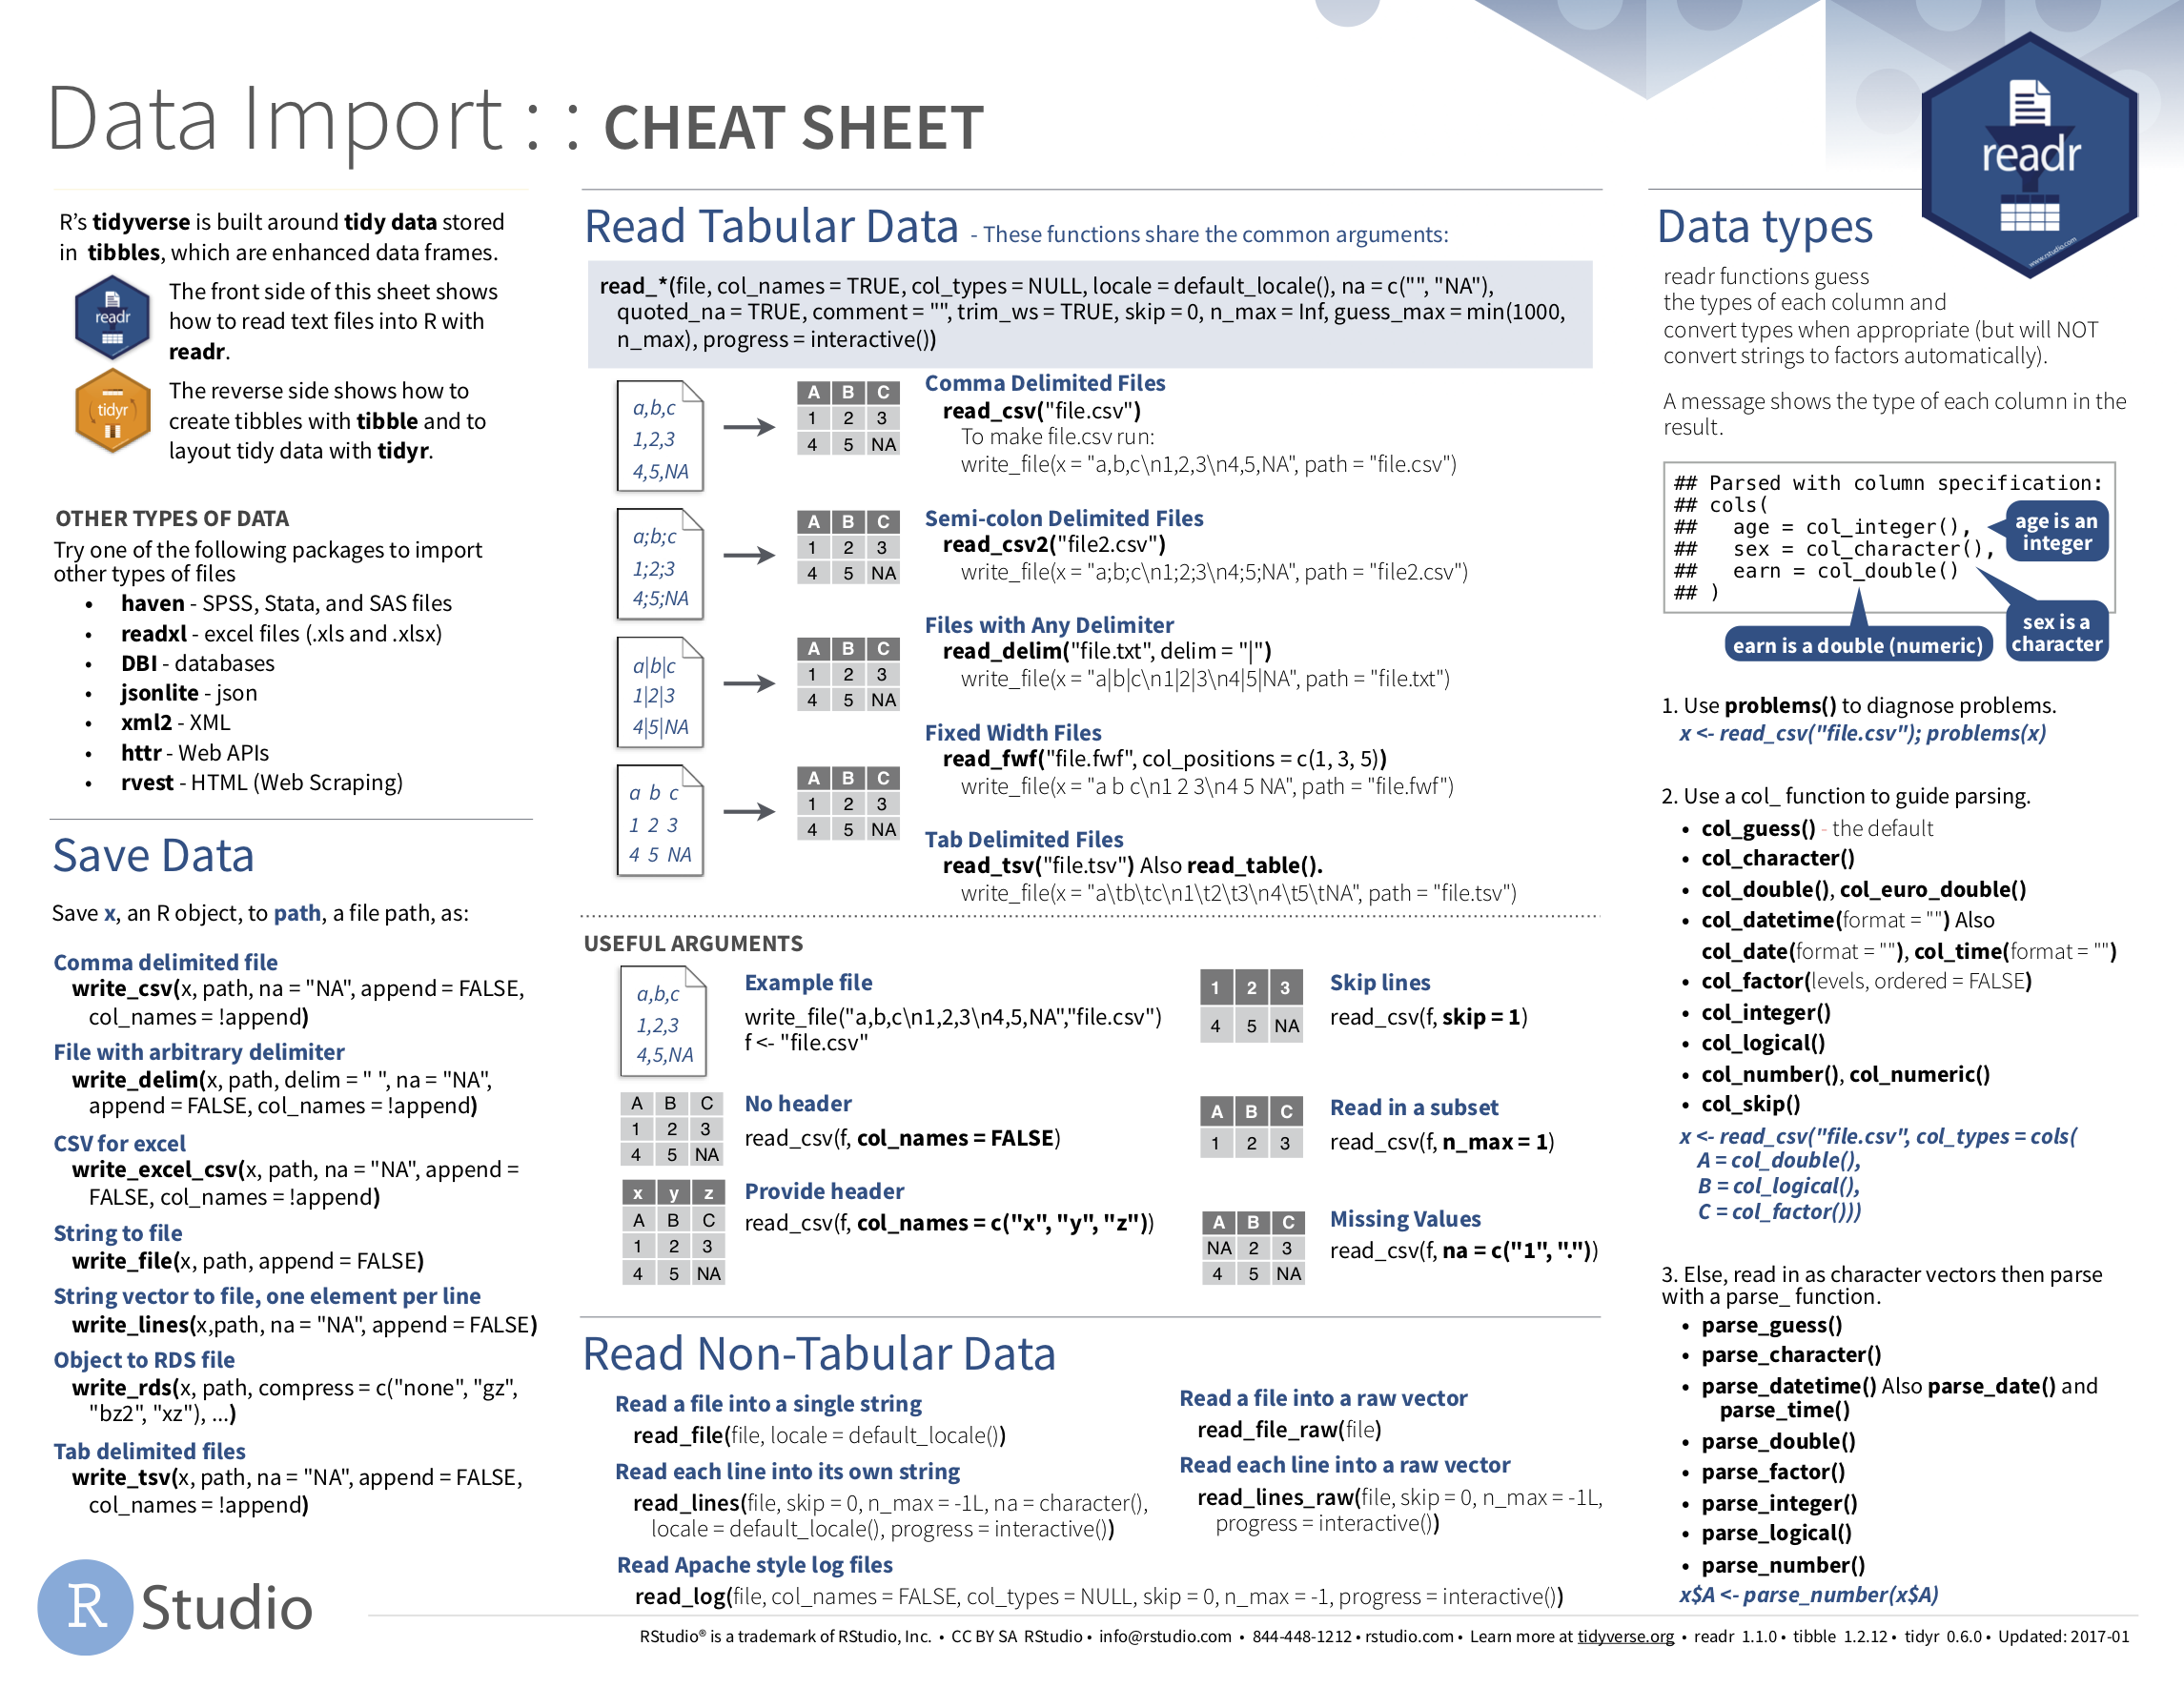 Data Import cheatsheet.